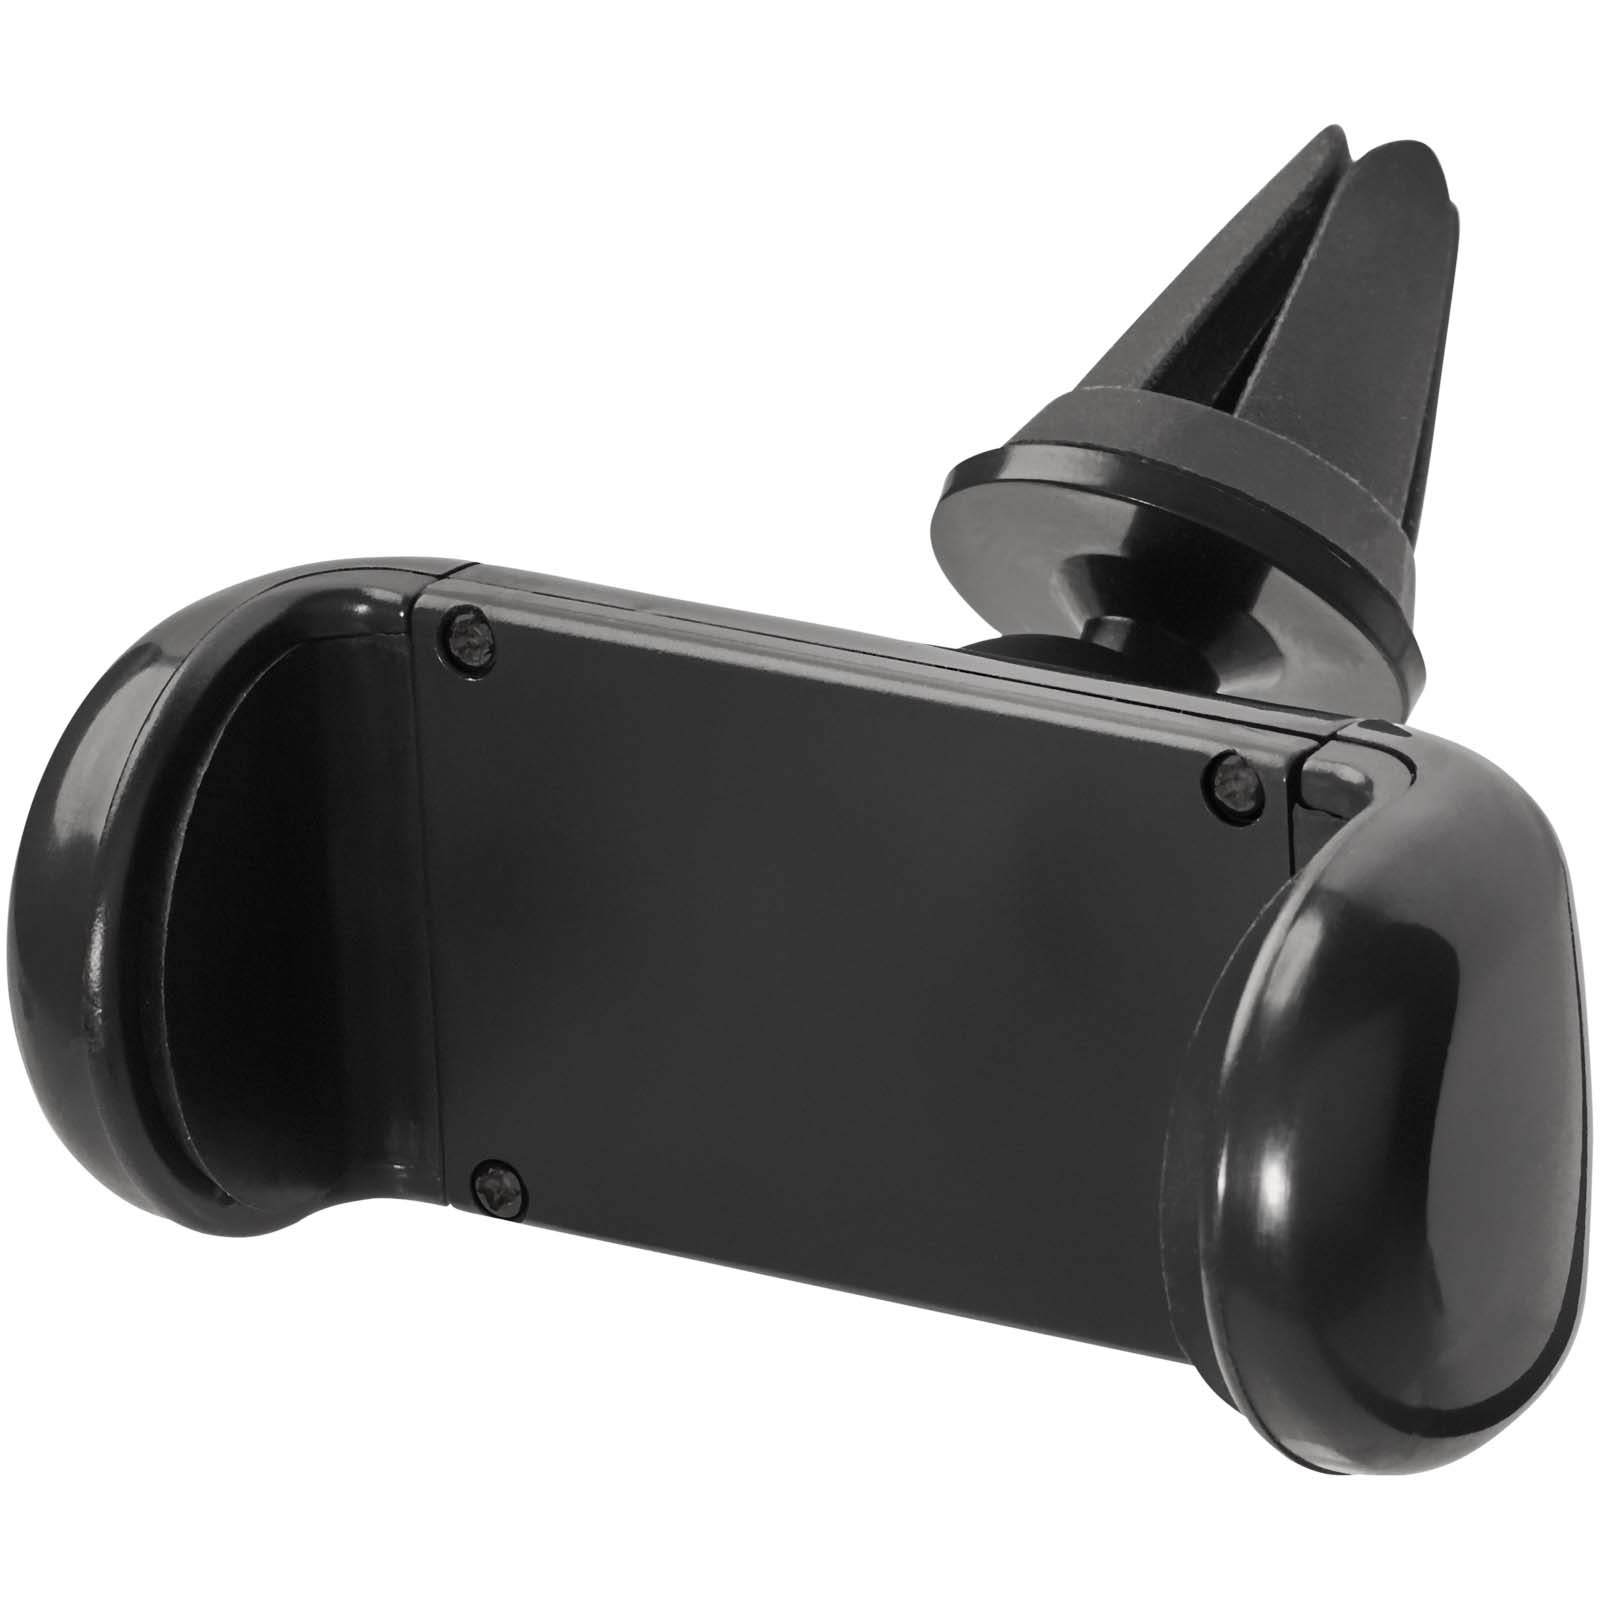 Accessoires pour téléphone et tablette publicitaires - Support de téléphone portable pour voiture Grip